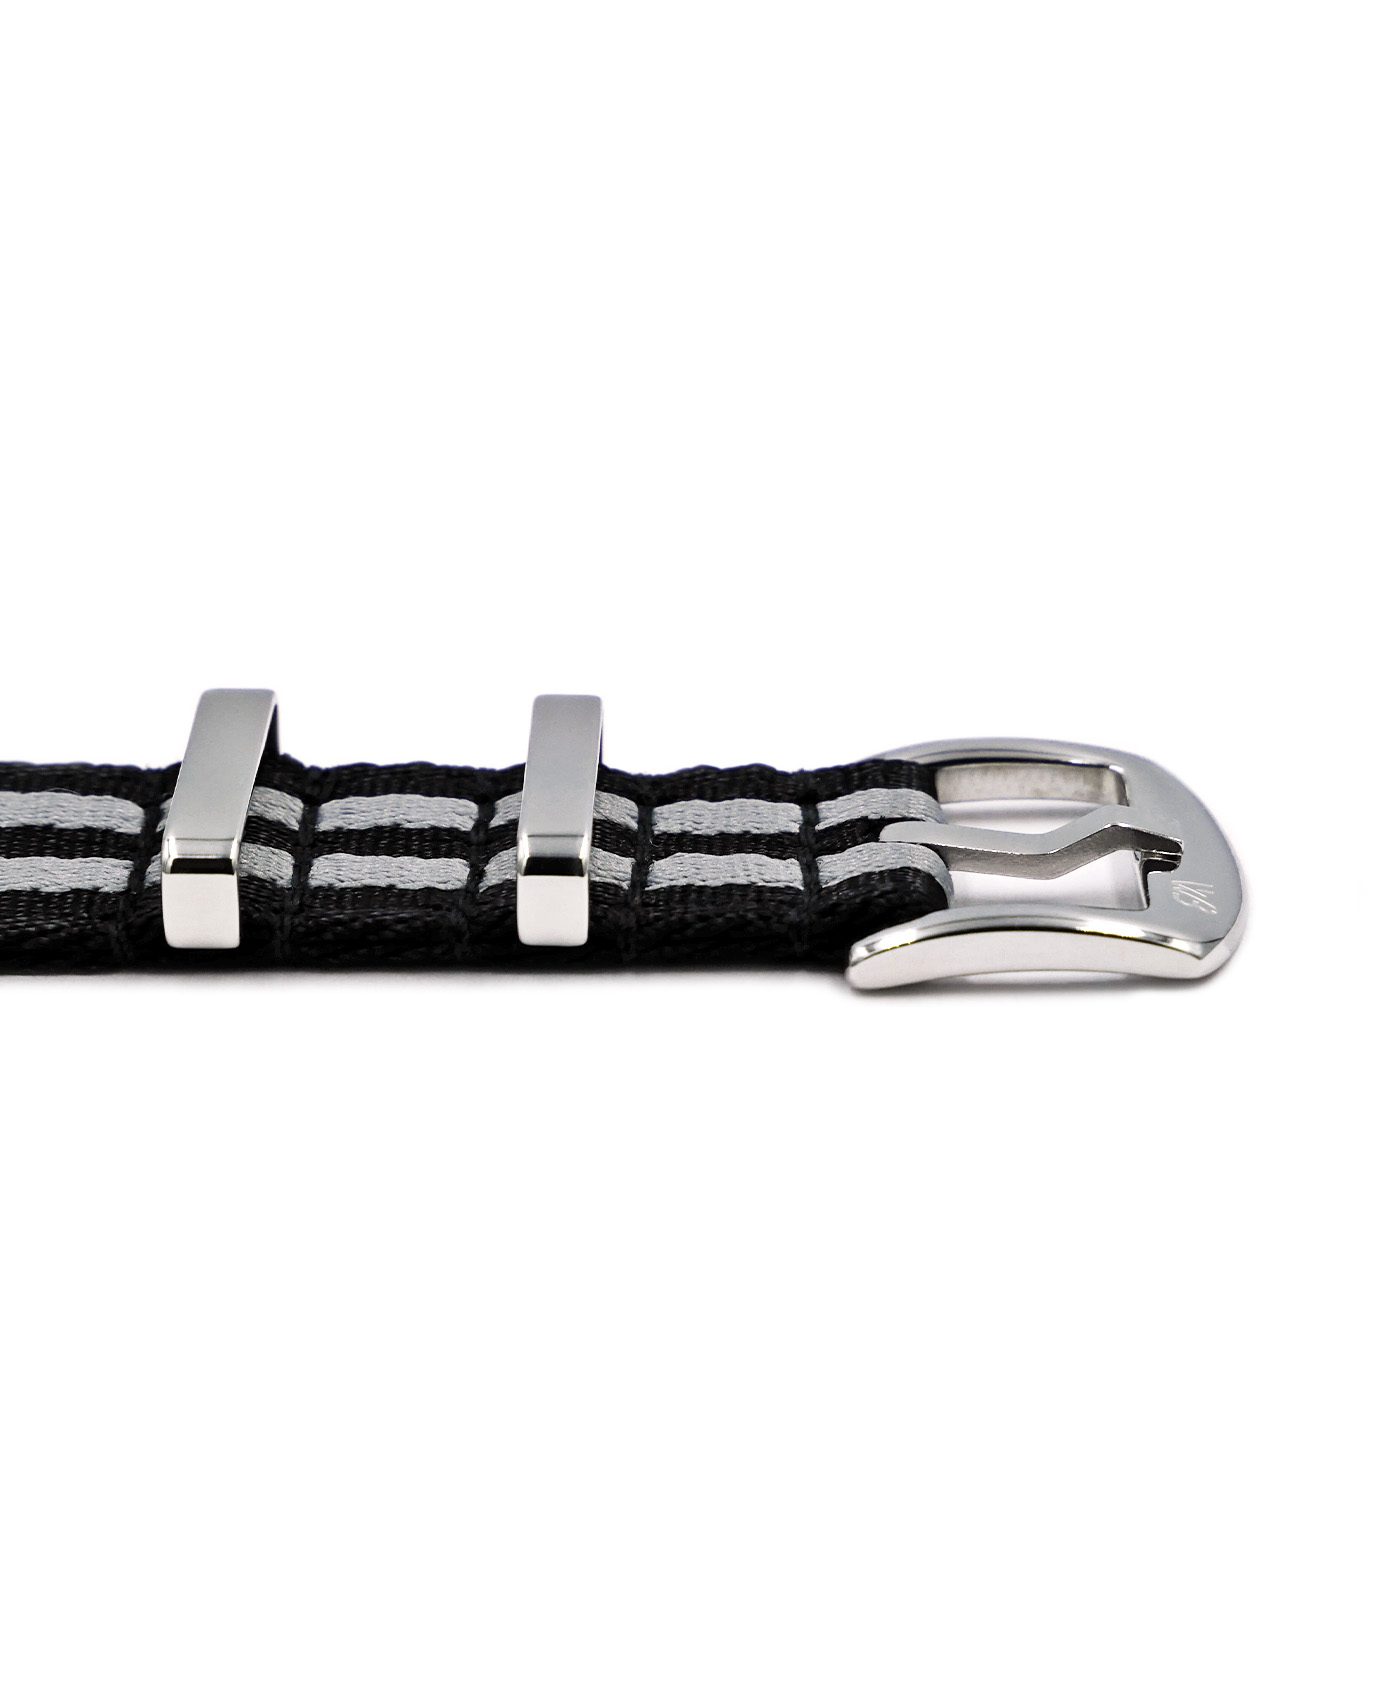 Premium 1.2 mm seat belt NATO Strap black grey striped buckle by WatchBandit